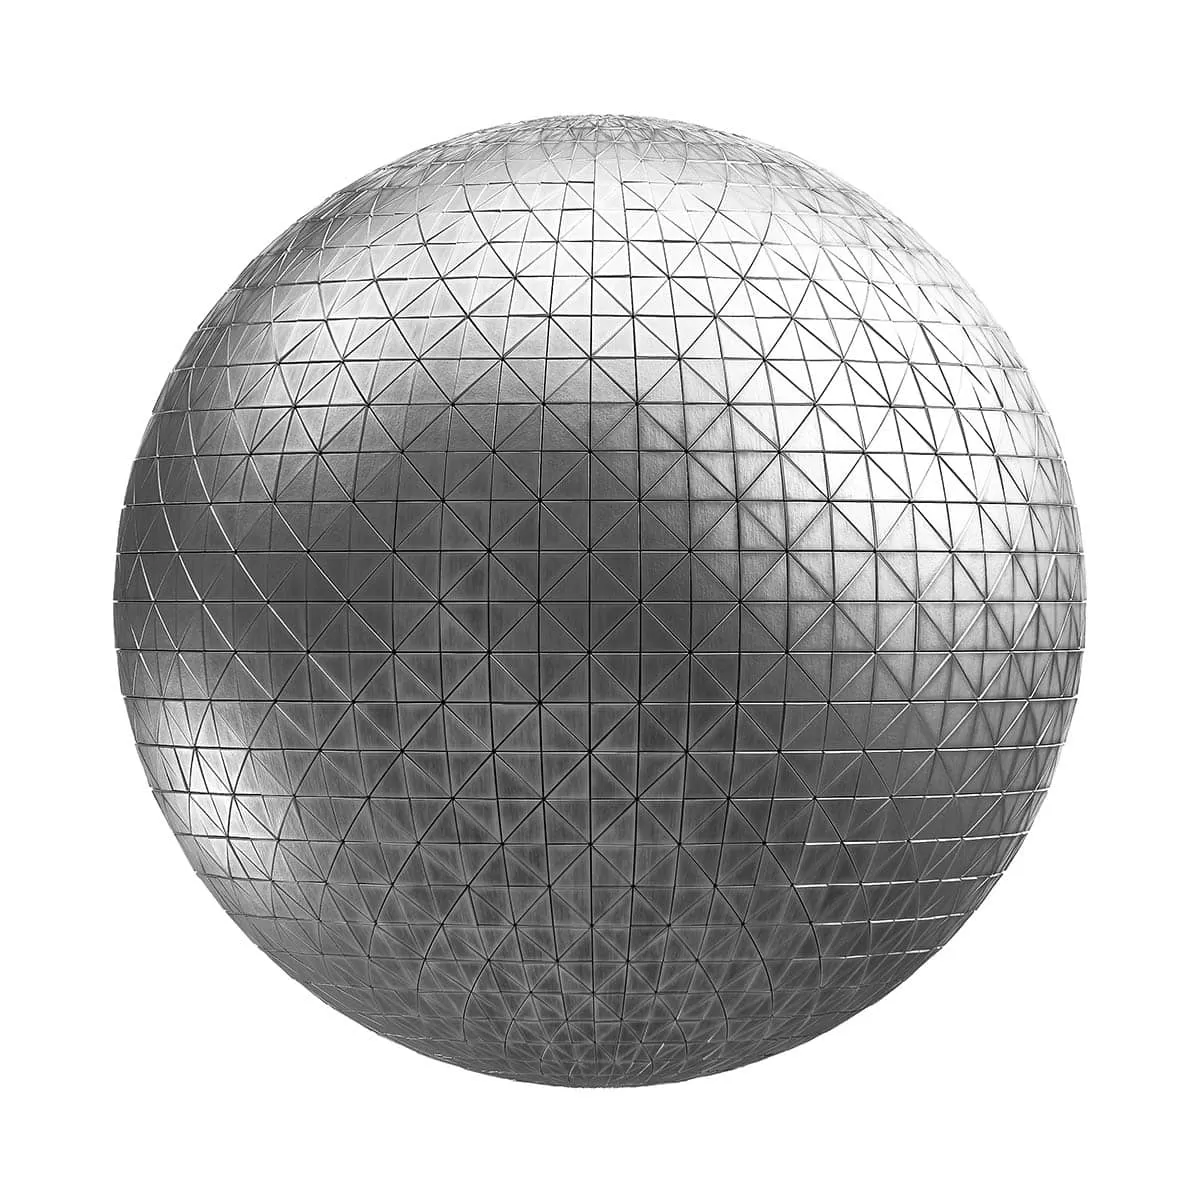 PBR Textures Volume 26 – Metals – 4K – 8K – triangle_metal_tiles_26_50